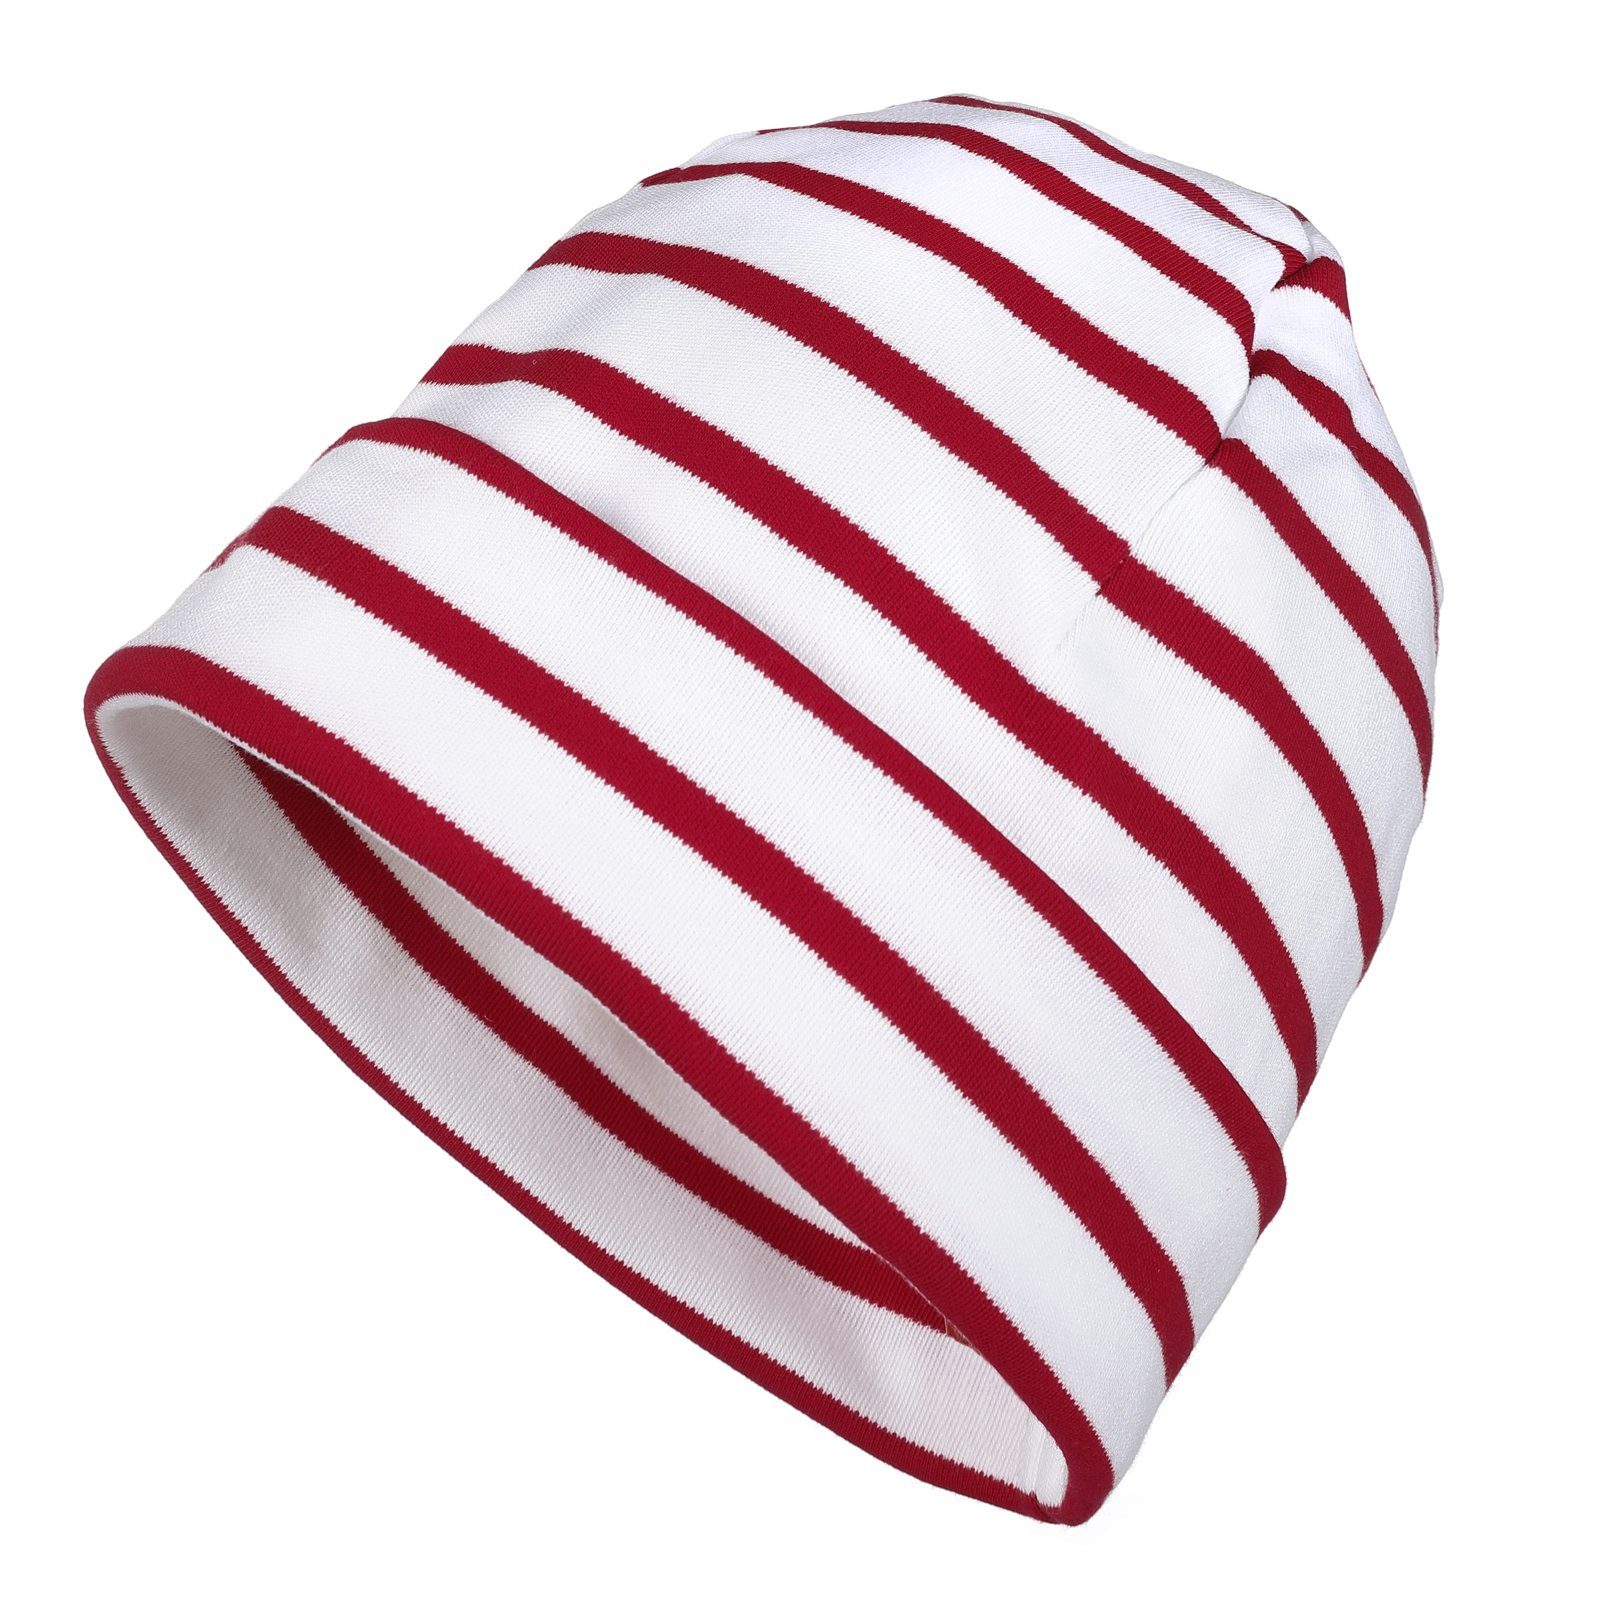 modAS Strickmütze Unisex Mütze Streifen für Kinder & Erwachsene - Ringelmütze Baumwolle (03) weiß / rot